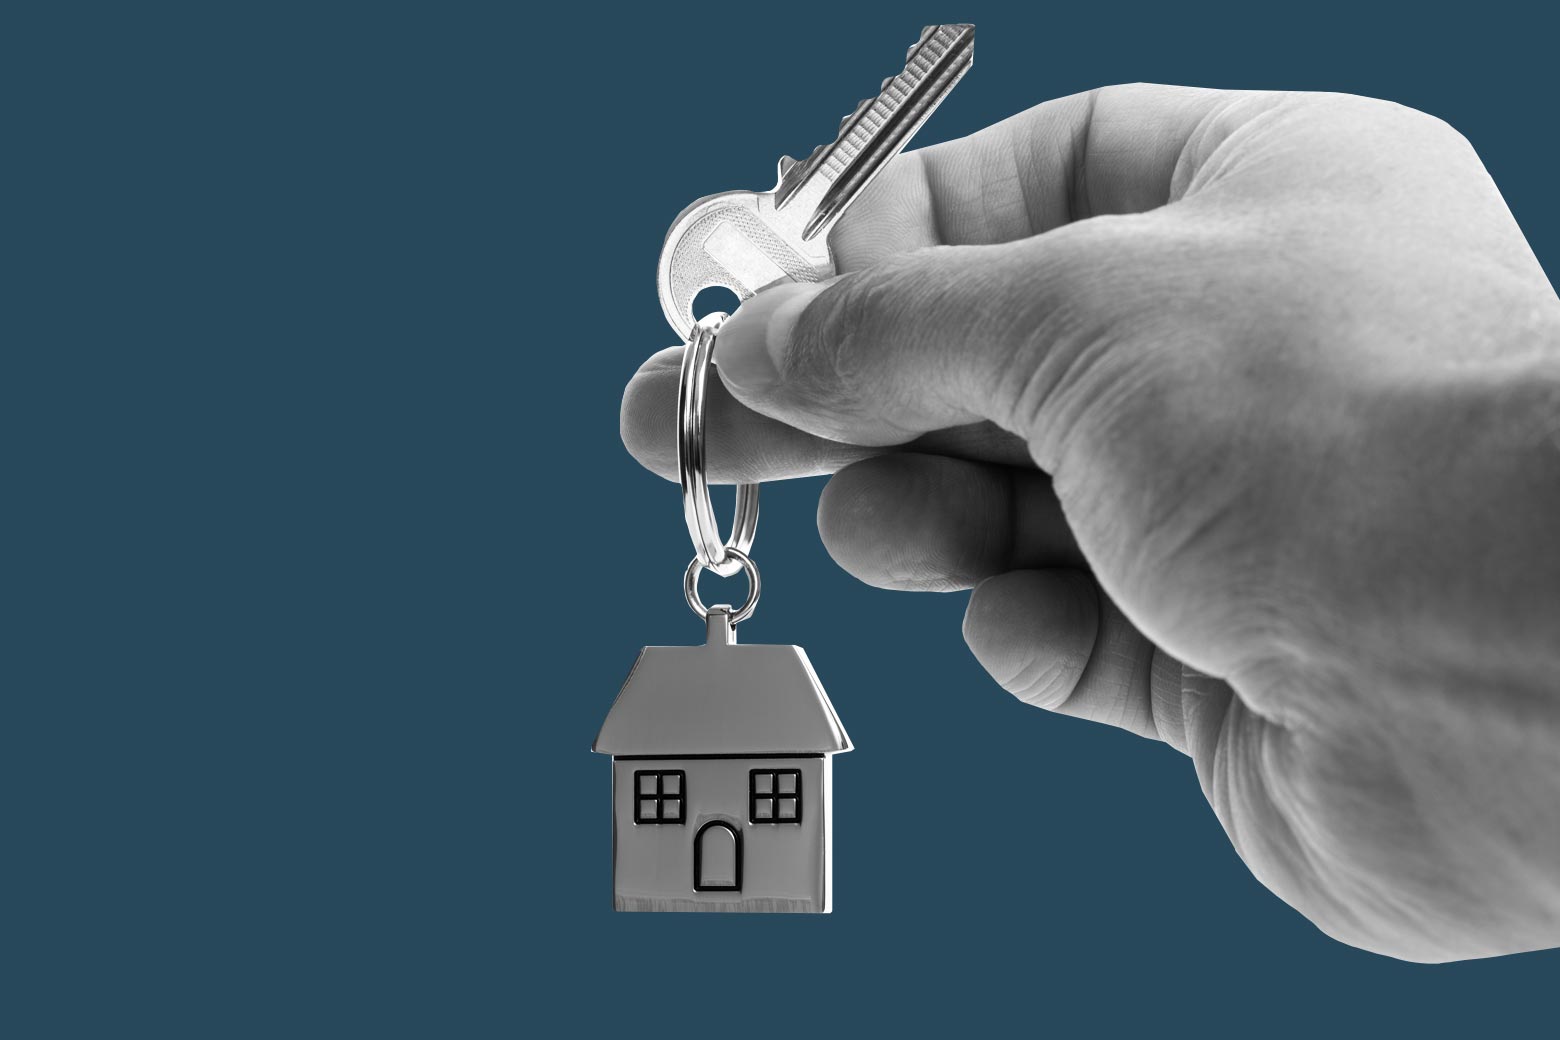 A hand holds a key that includes a keychain shaped like a house.